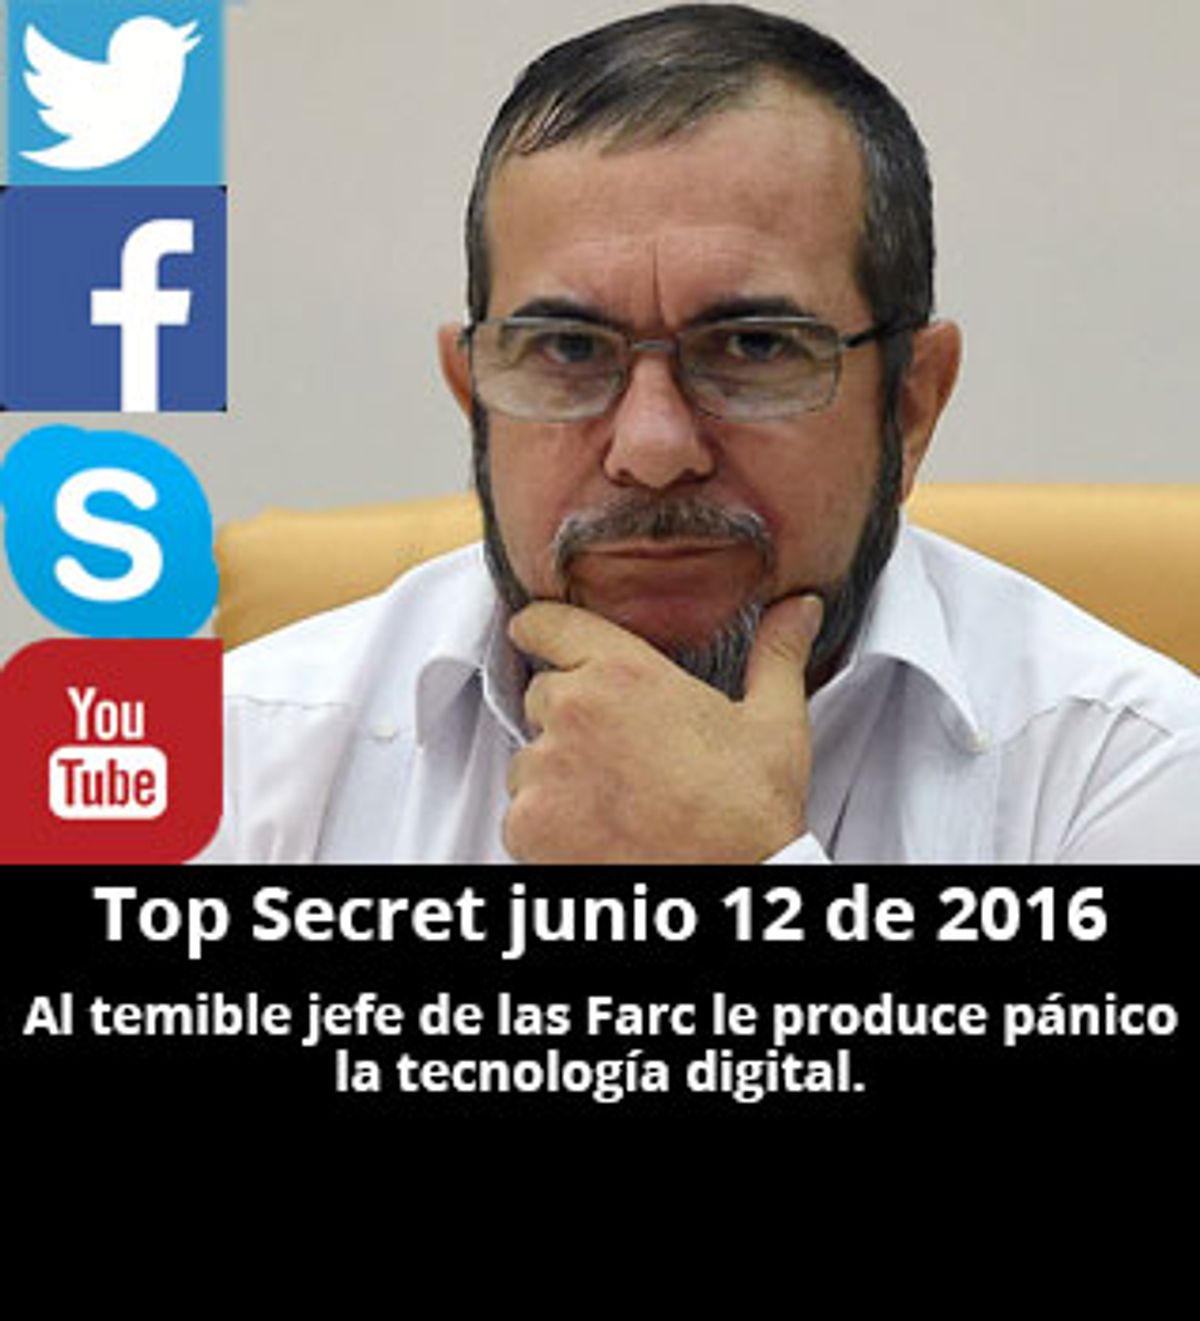 Top Secret junio 12 de 2016